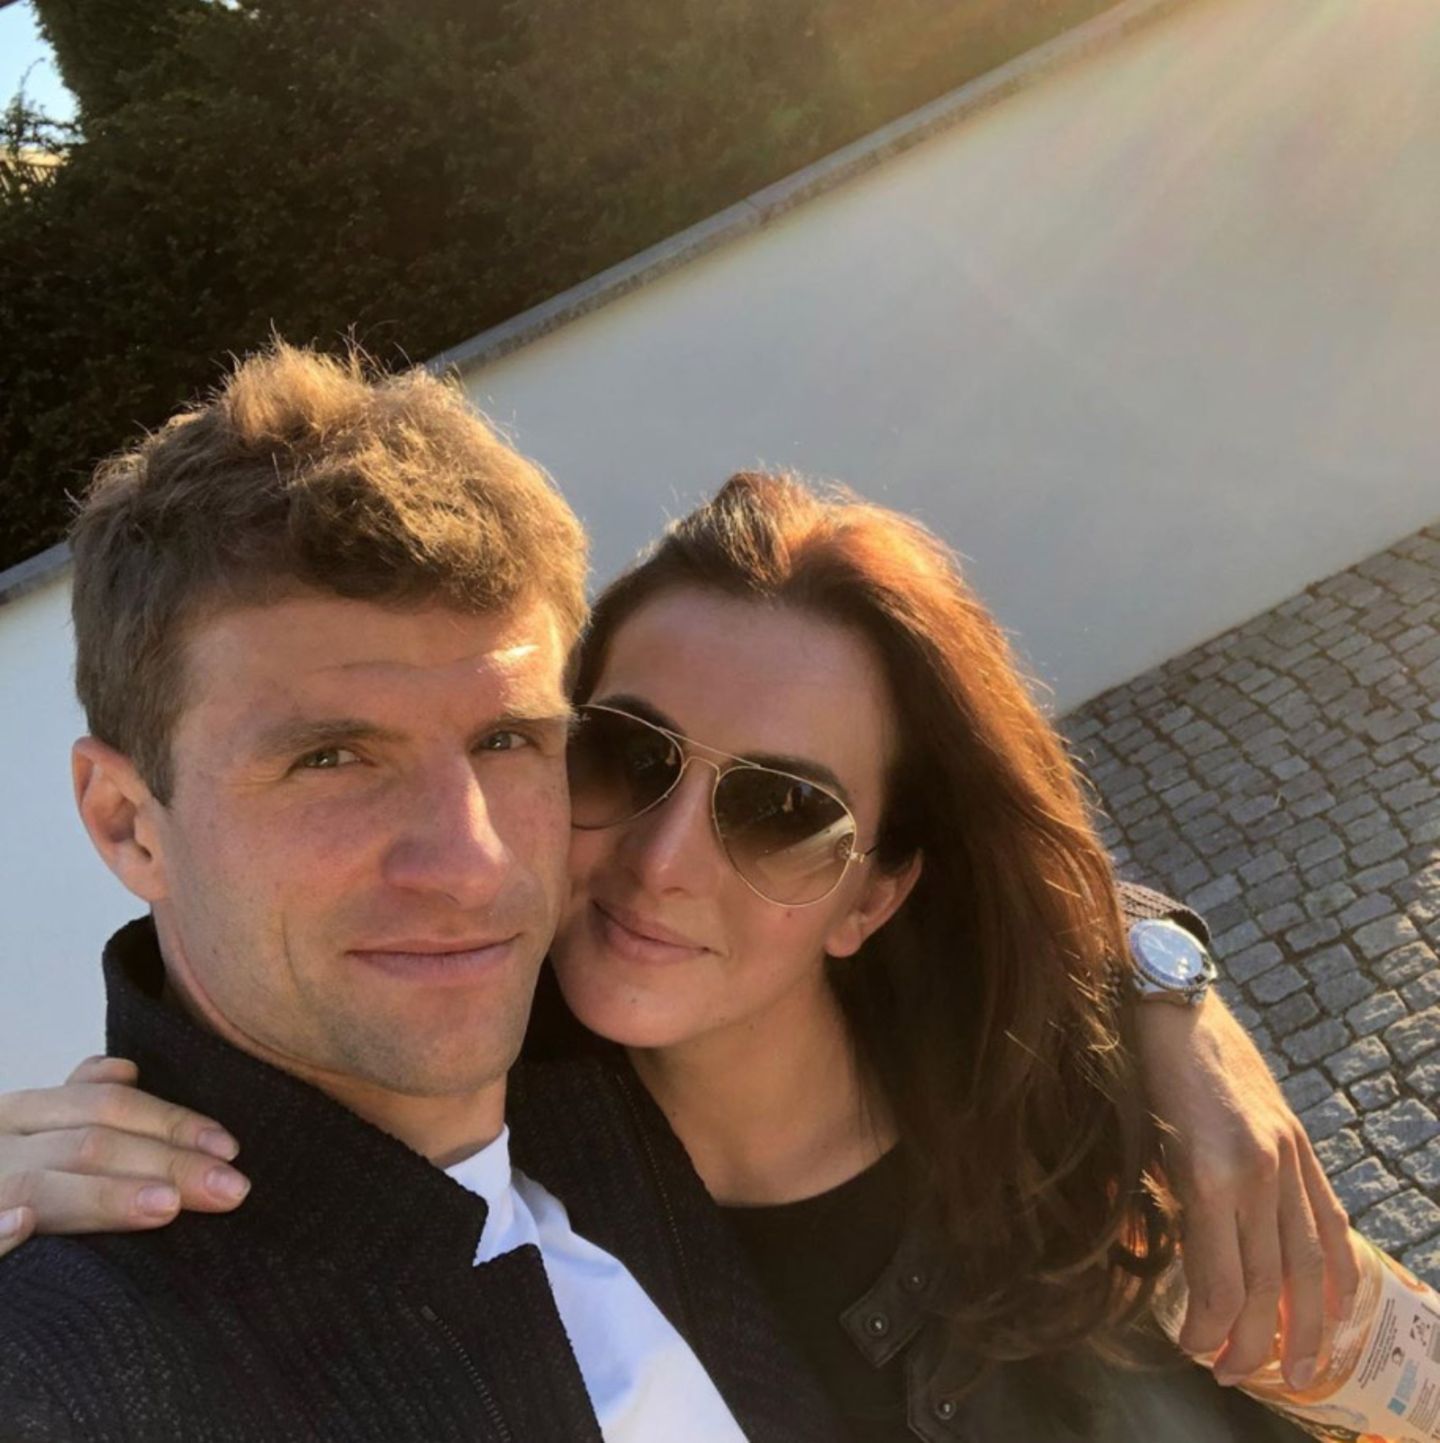 7. Mai 2020  Thomas und Lisa Müller genießen die gemeinsame Zeit in Quarantäne. Das Paar, das bereits seit über 10 Jahren verheiratet ist, wirkt dabei verliebt wie am ersten Tag.